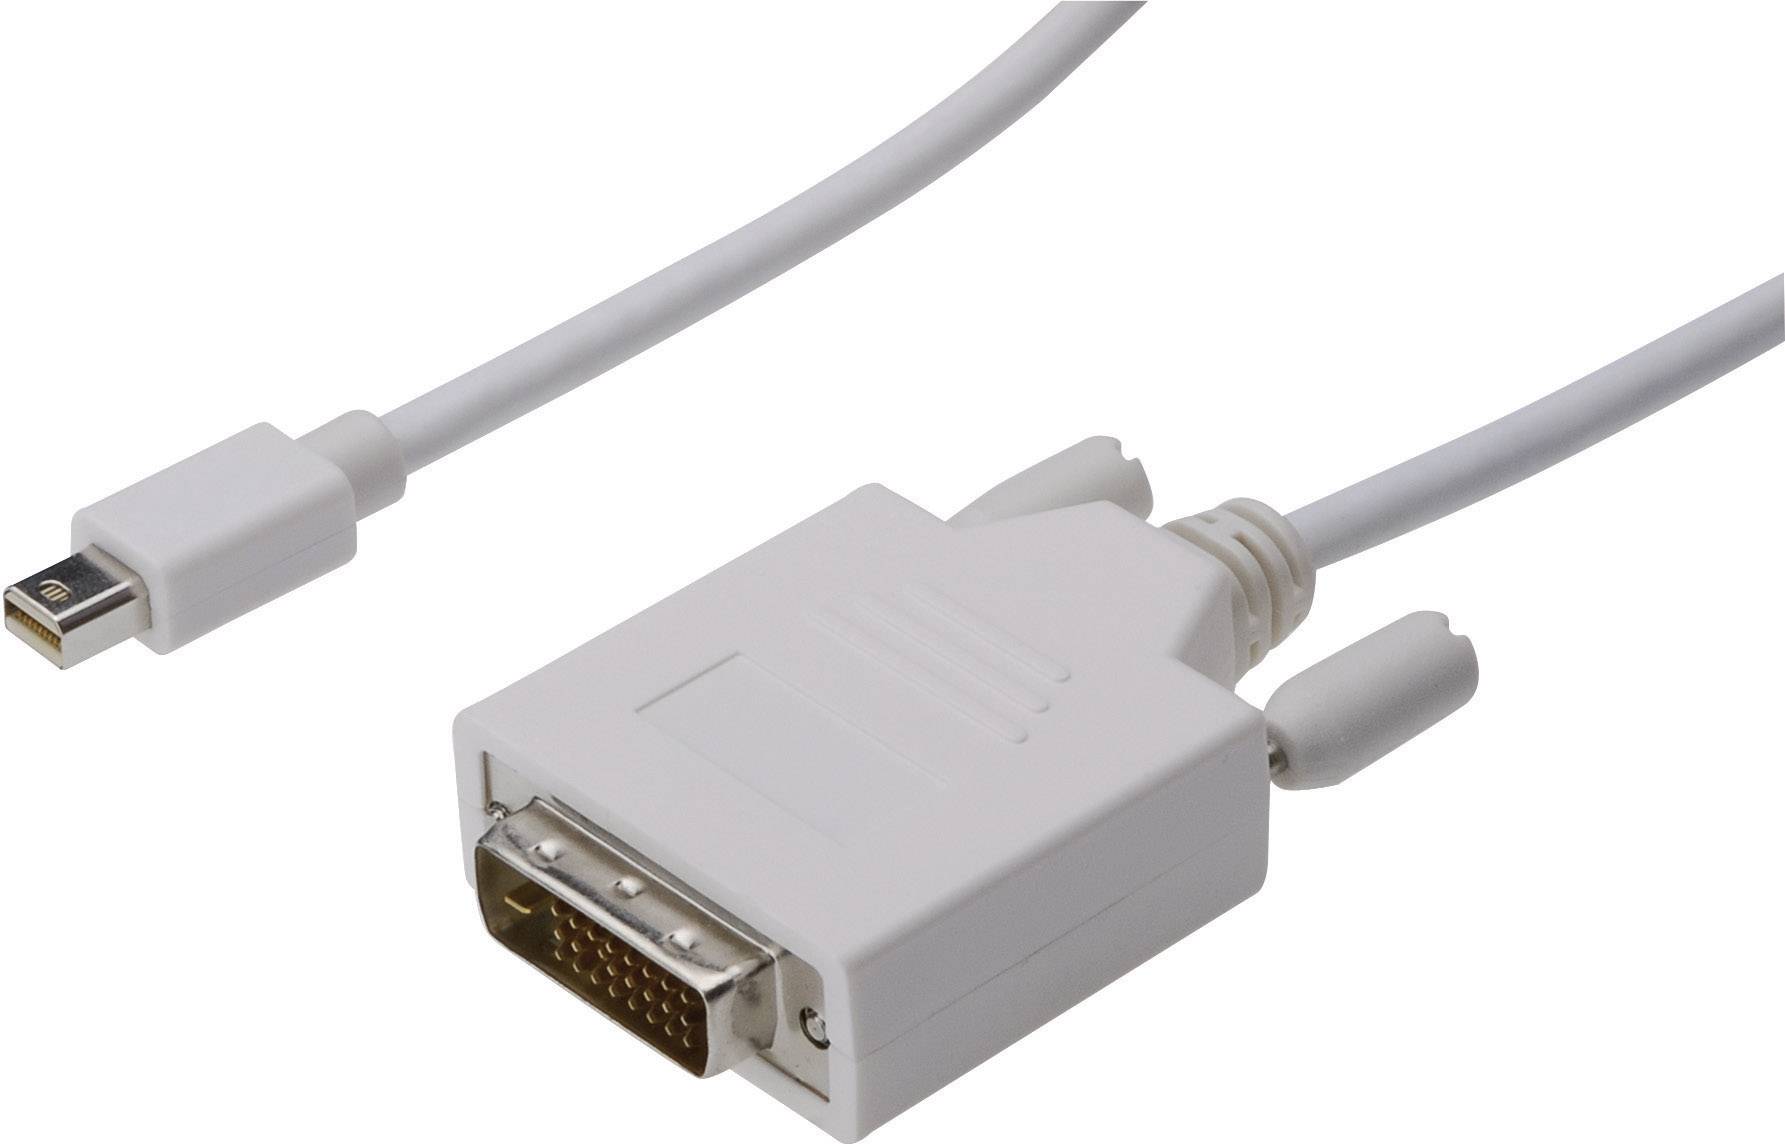 DIGITUS DisplayPort / DVI Anschlusskabel [1x Mini-DisplayPort Stecker - 1x DVI-Stecker 24+1pol.] 2 m